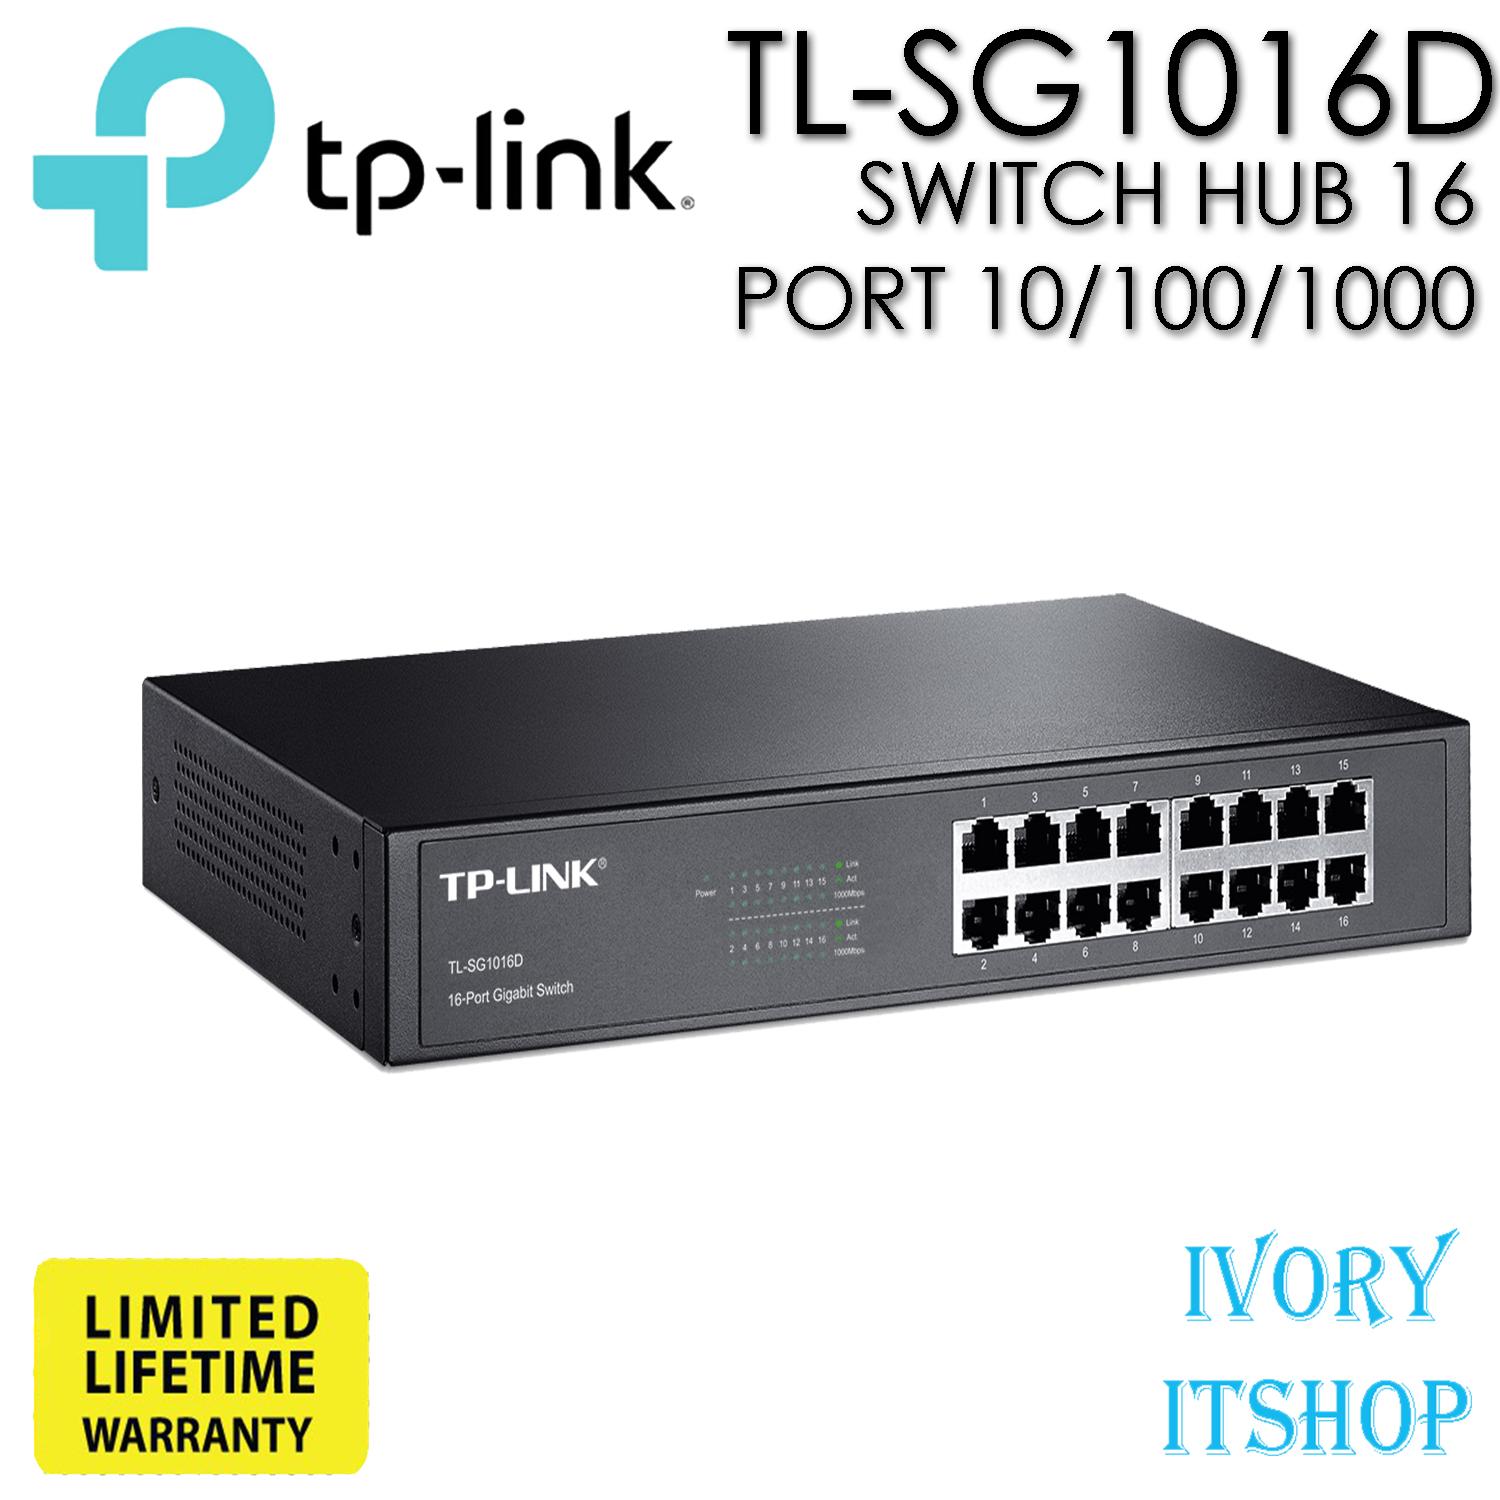 Tp-Link Tl-Sg1016d Gigabit Switch Hub 16 Port 10/100/1000 Mbps Sg1016d/ivoryitshop. 